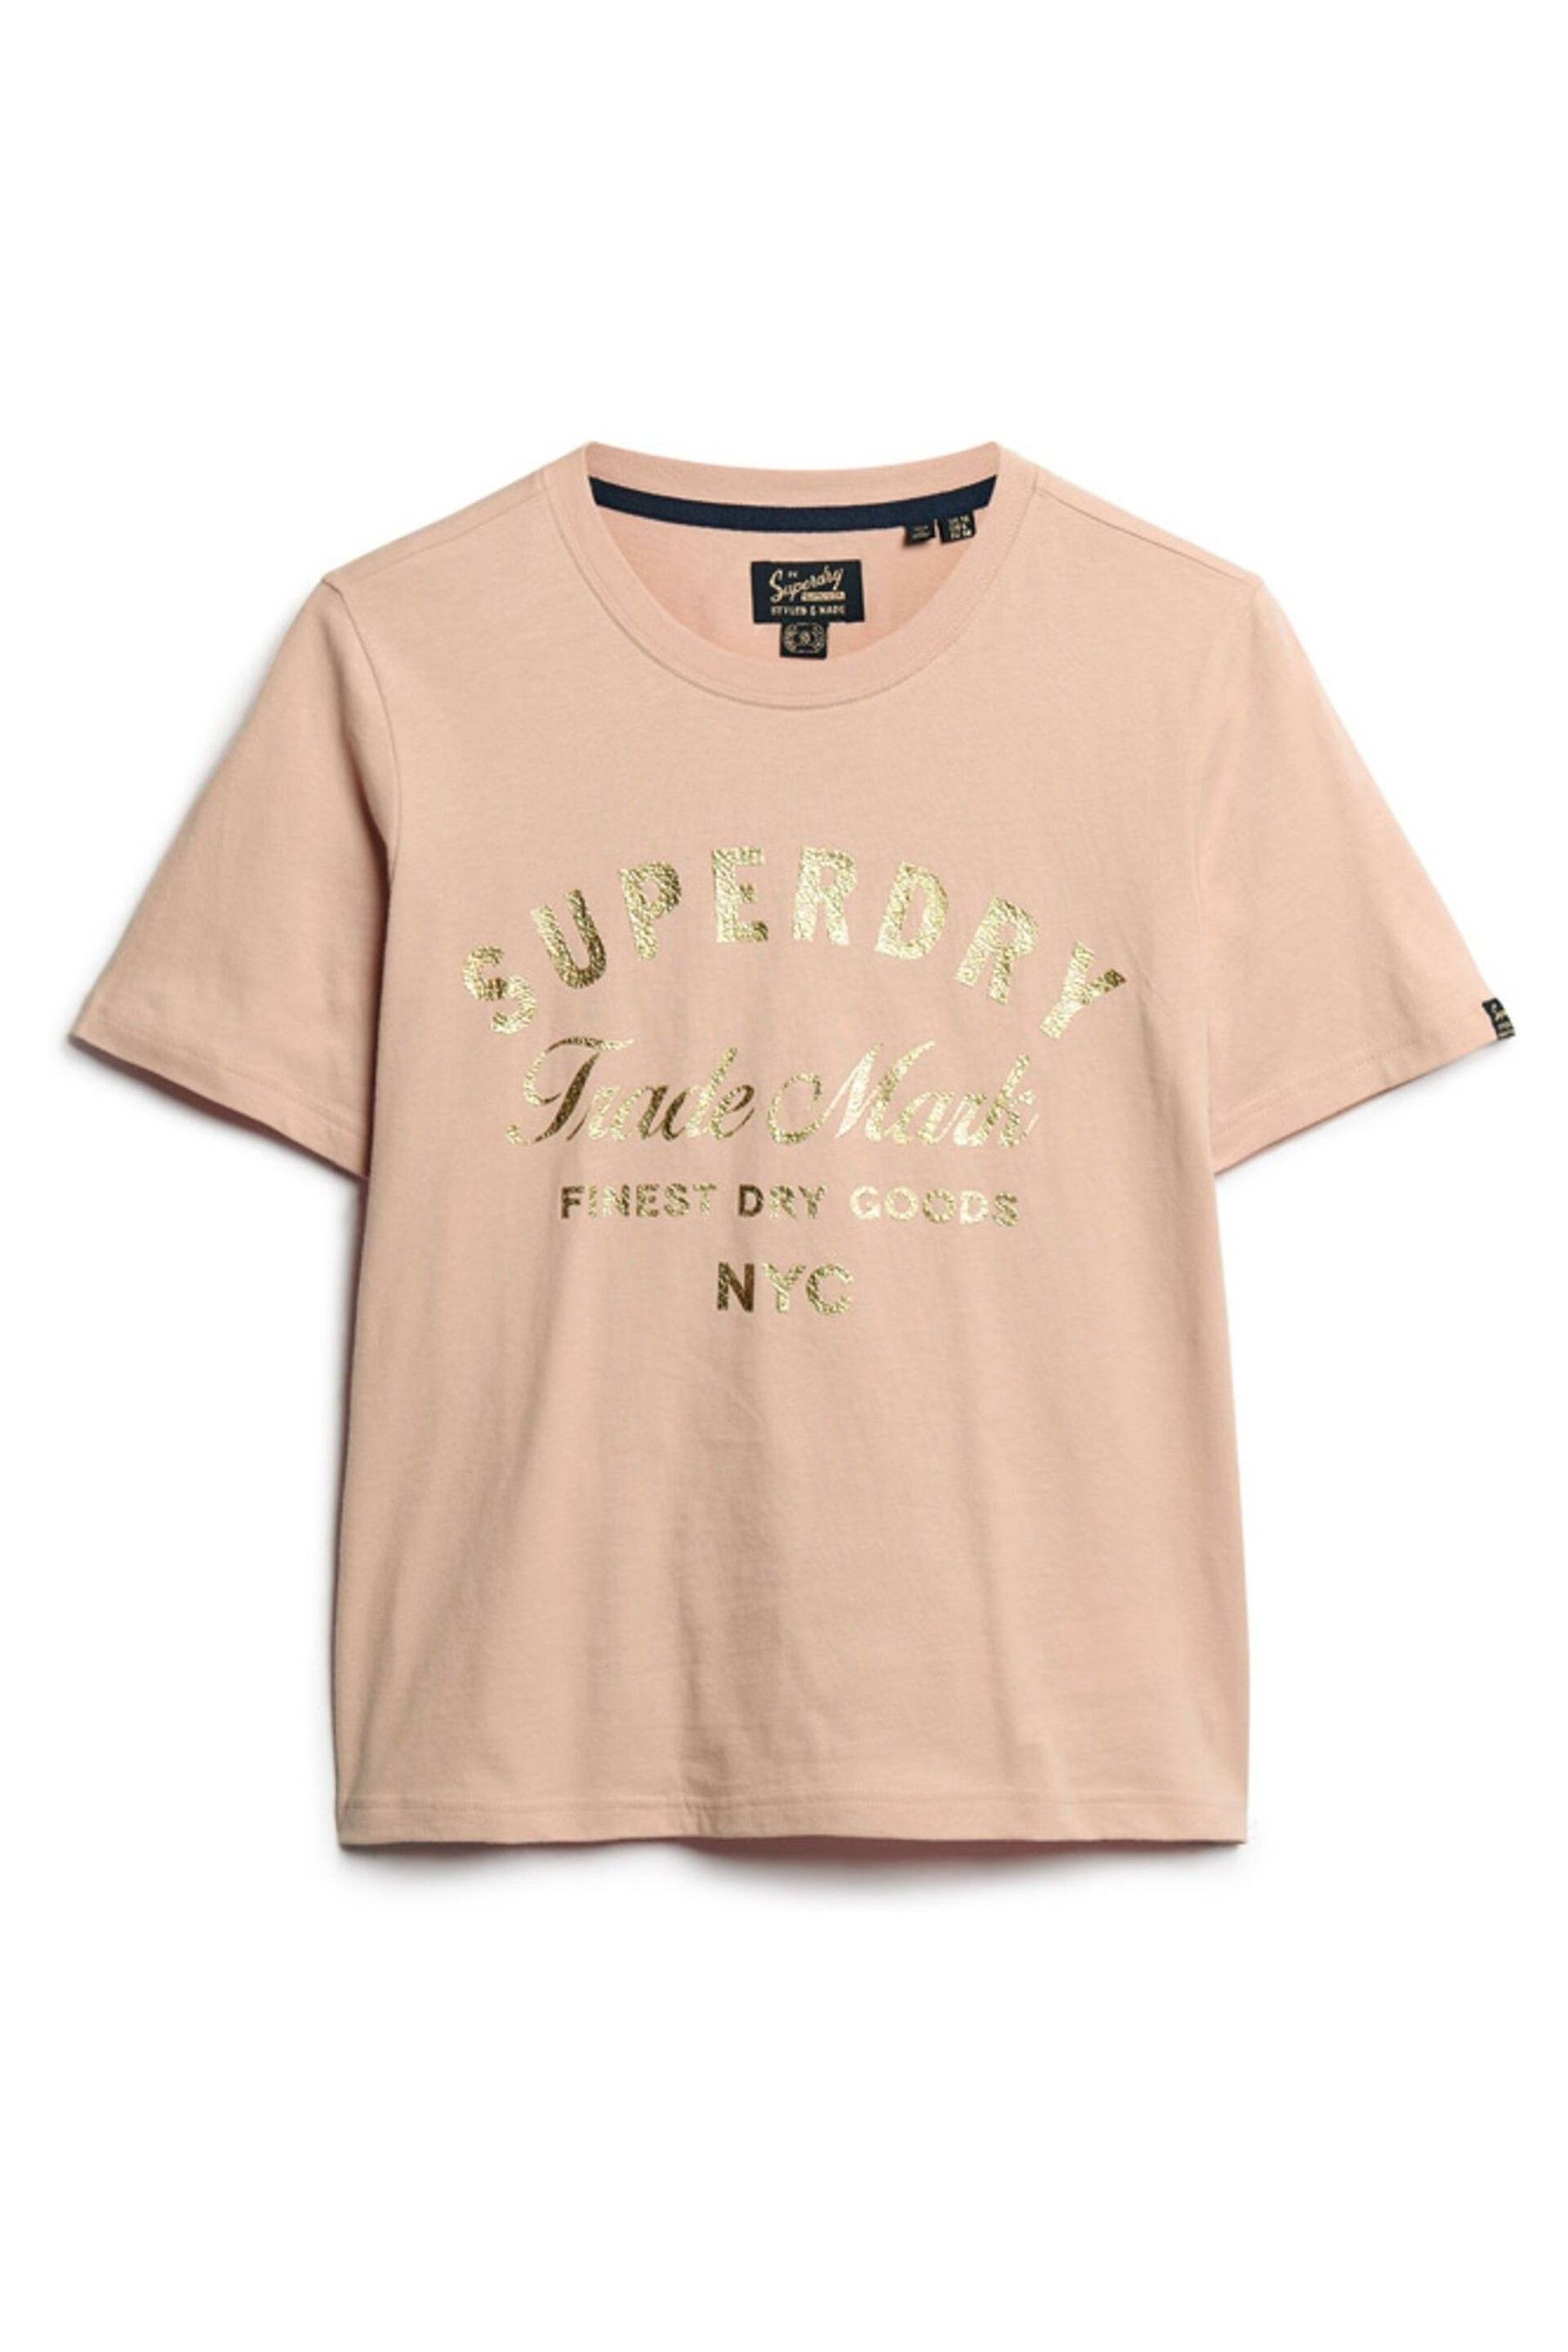 Superdry Pink Luxe Metallic Logo T-Shirt - Image 4 of 6